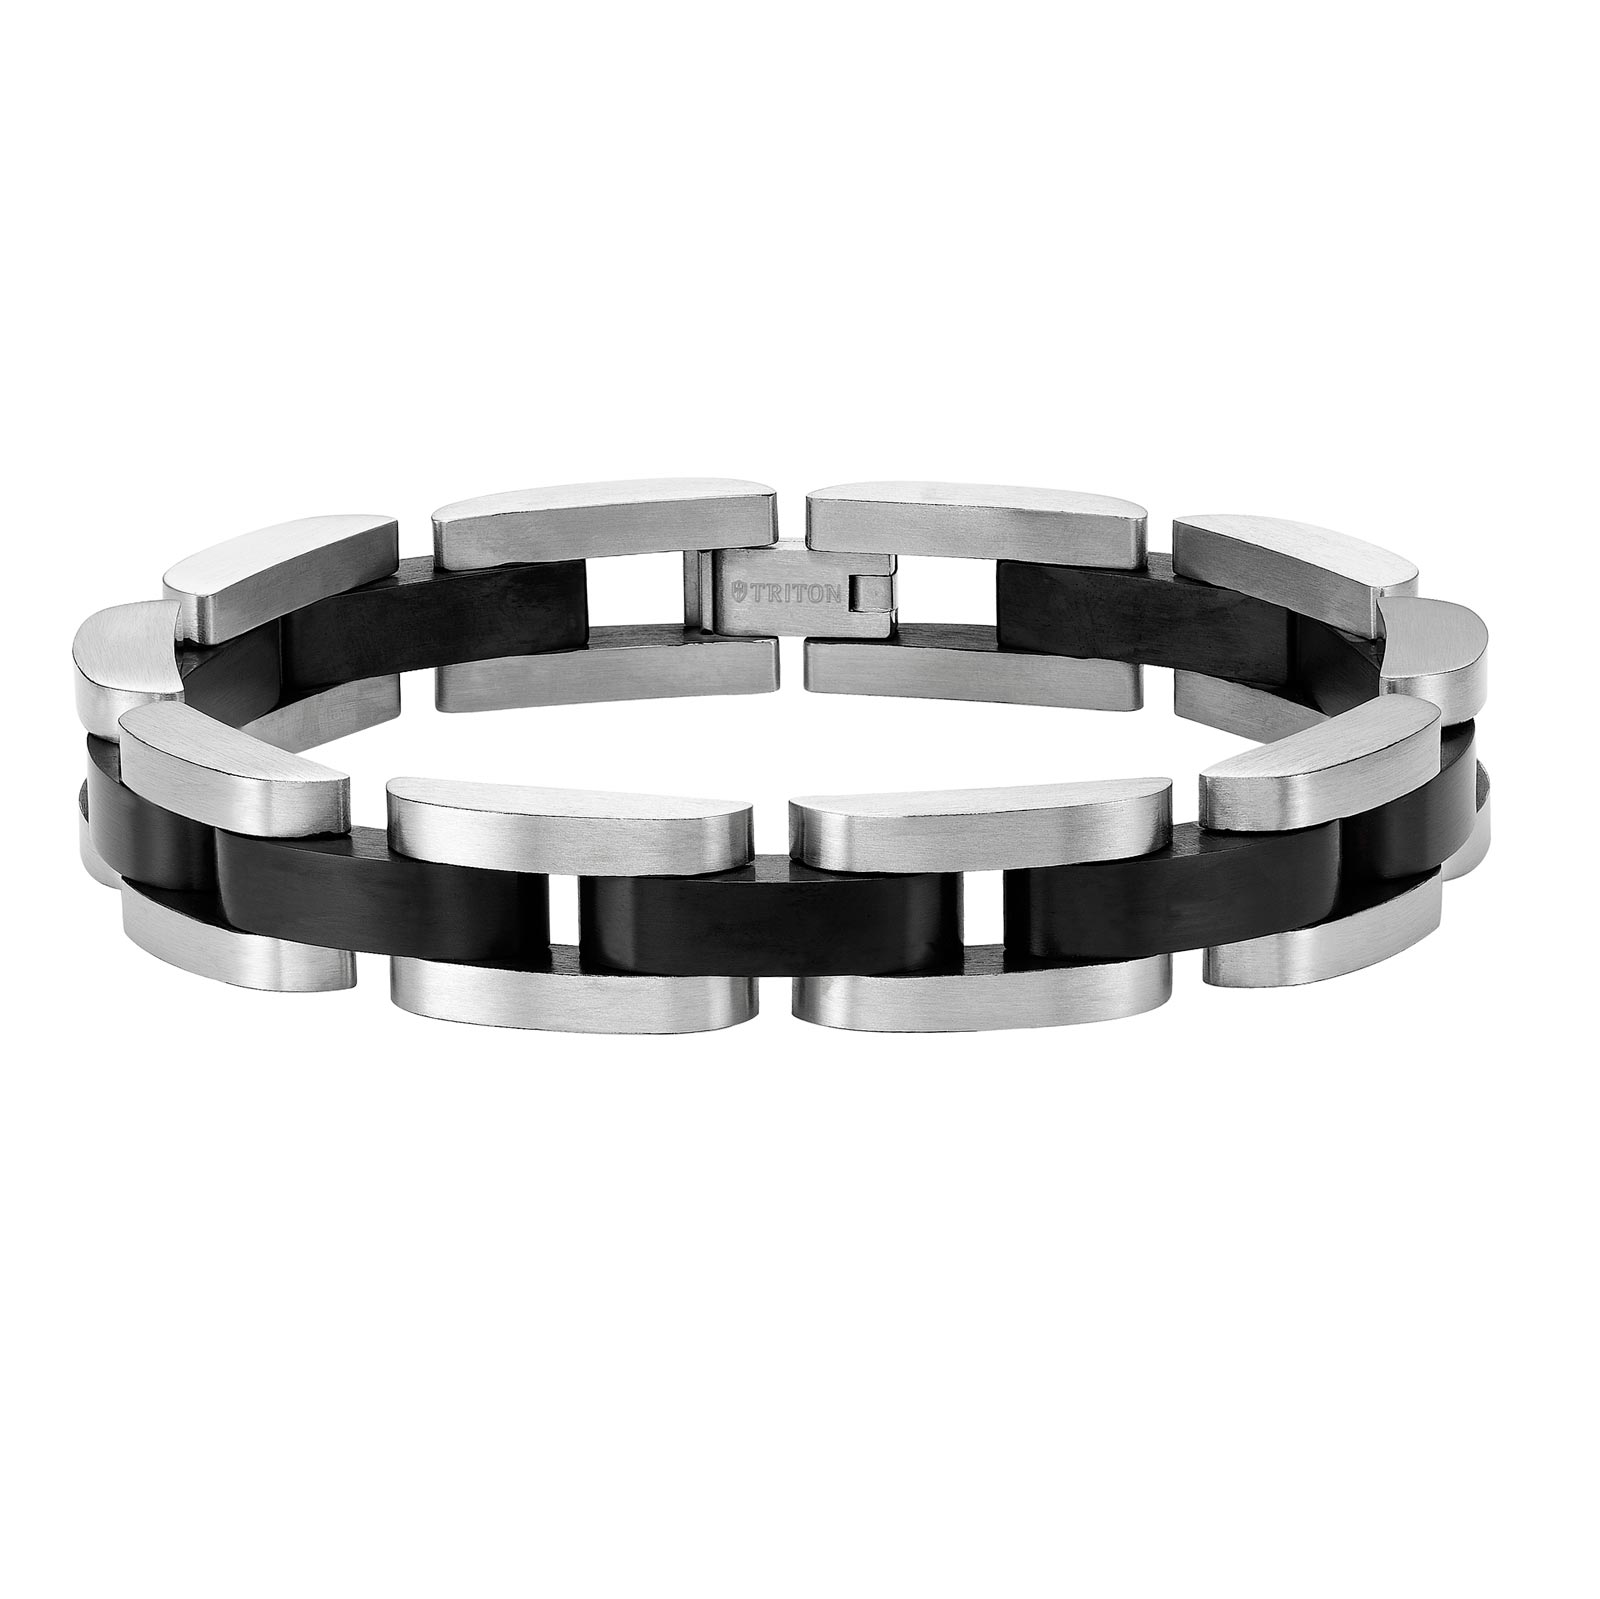 Triton Bracelet 95-2561-G00 • Long Island NY • Mens Bracelets, Triton ...